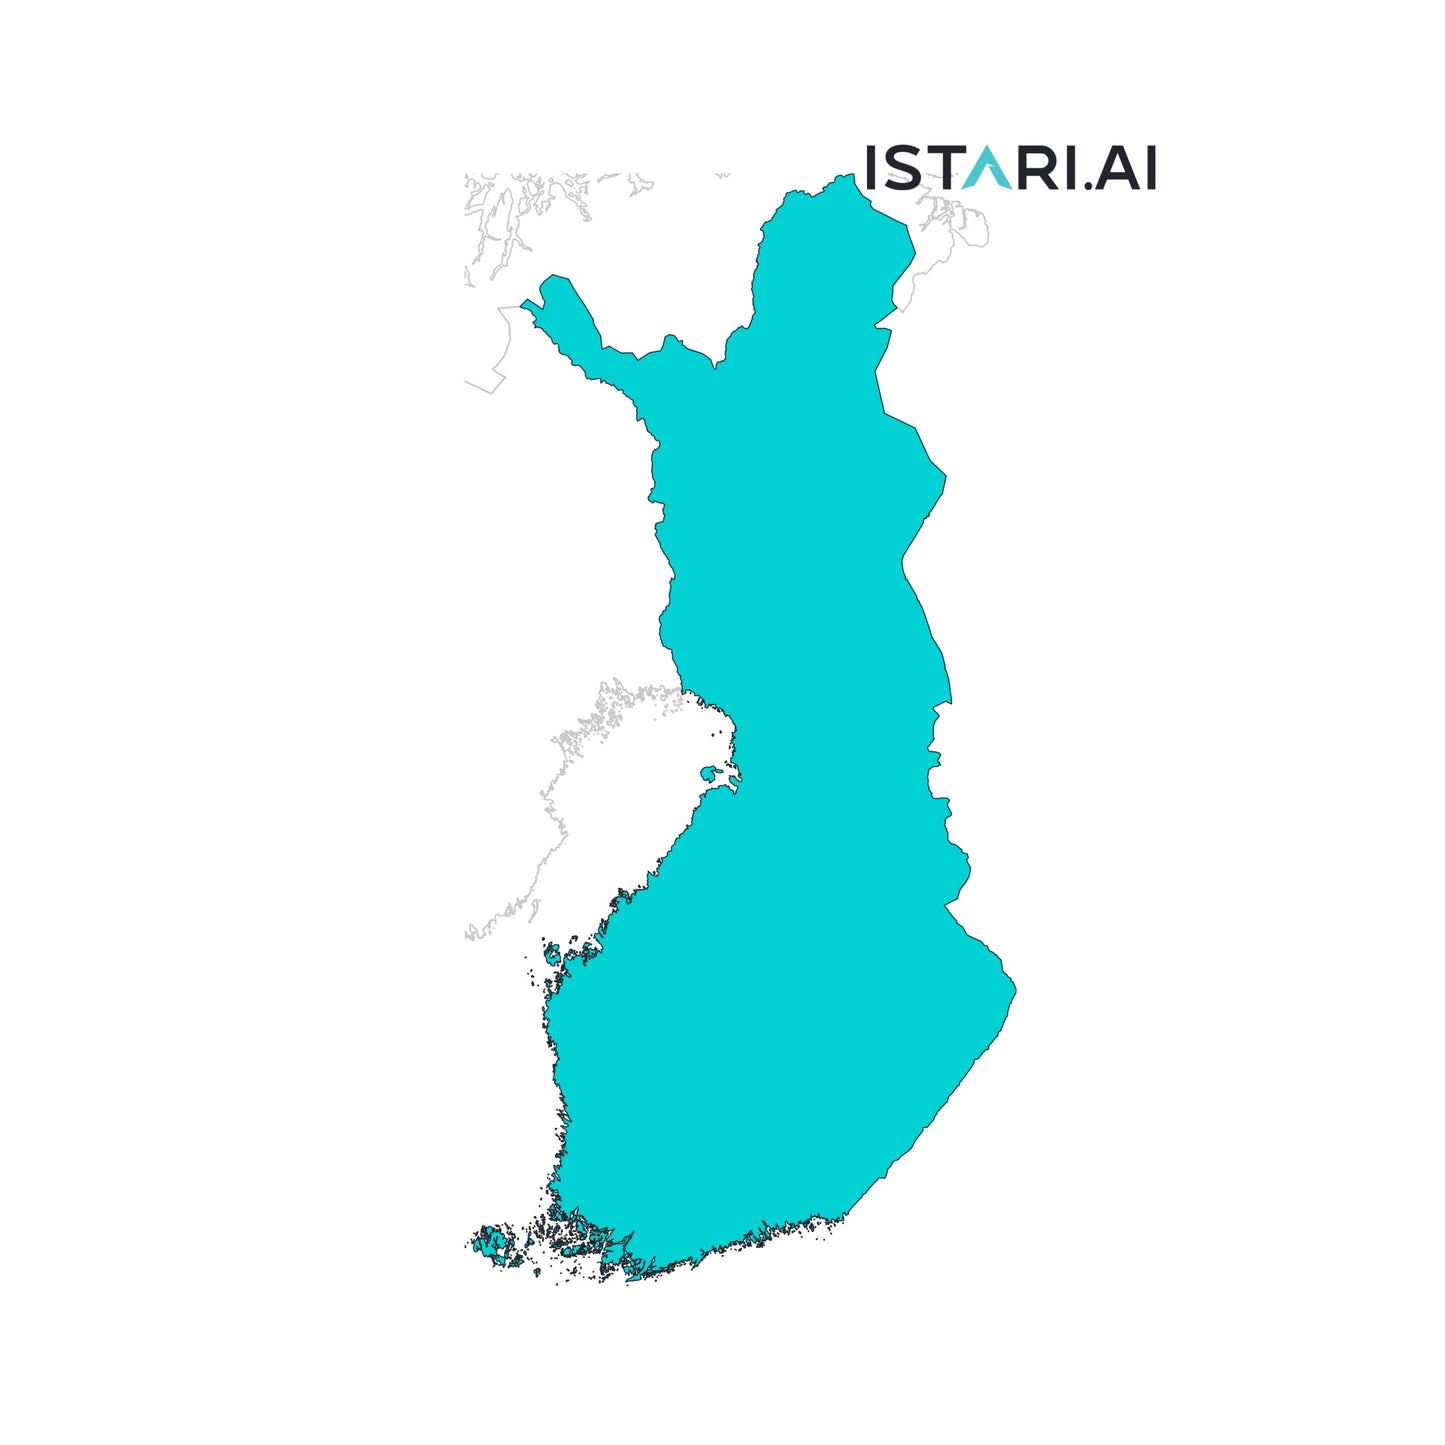 Sustainability Company List Suomi-Finland Finland